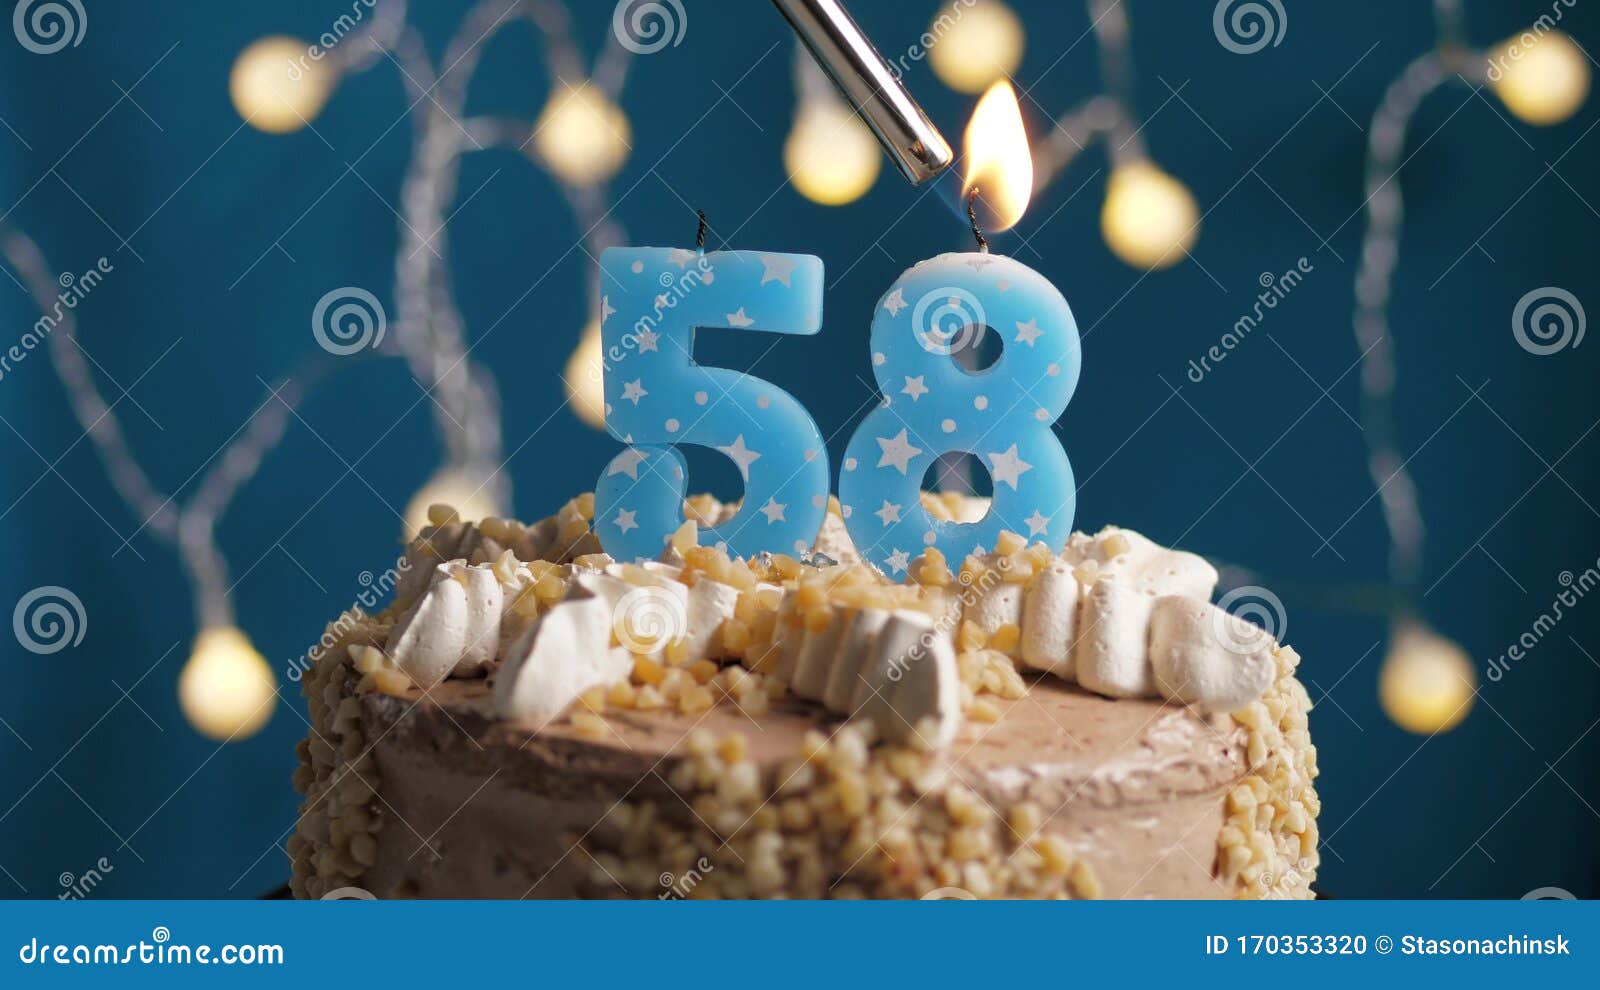 Velas de Pastel de cumpleaños metálicas Altas Velas de Cupcake largas y Delgadas para Decoraciones de Pasteles de Boda Coriver Velas de cumpleaños de Colores en titulares 30pcs-Silver